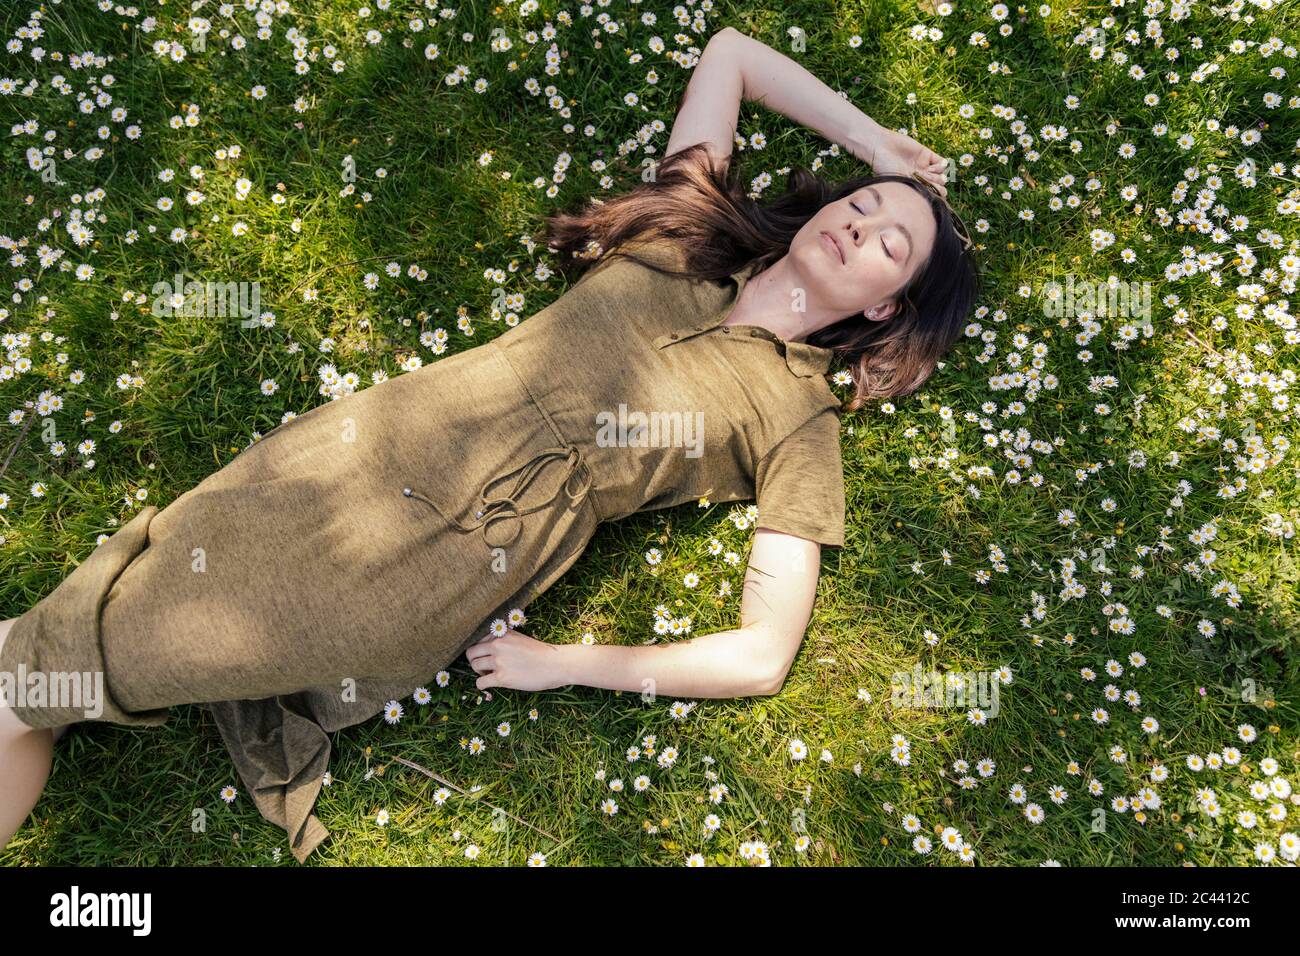 Donna che ama il tempo libero mentre si sdraiava sull'erba con margherite Foto Stock